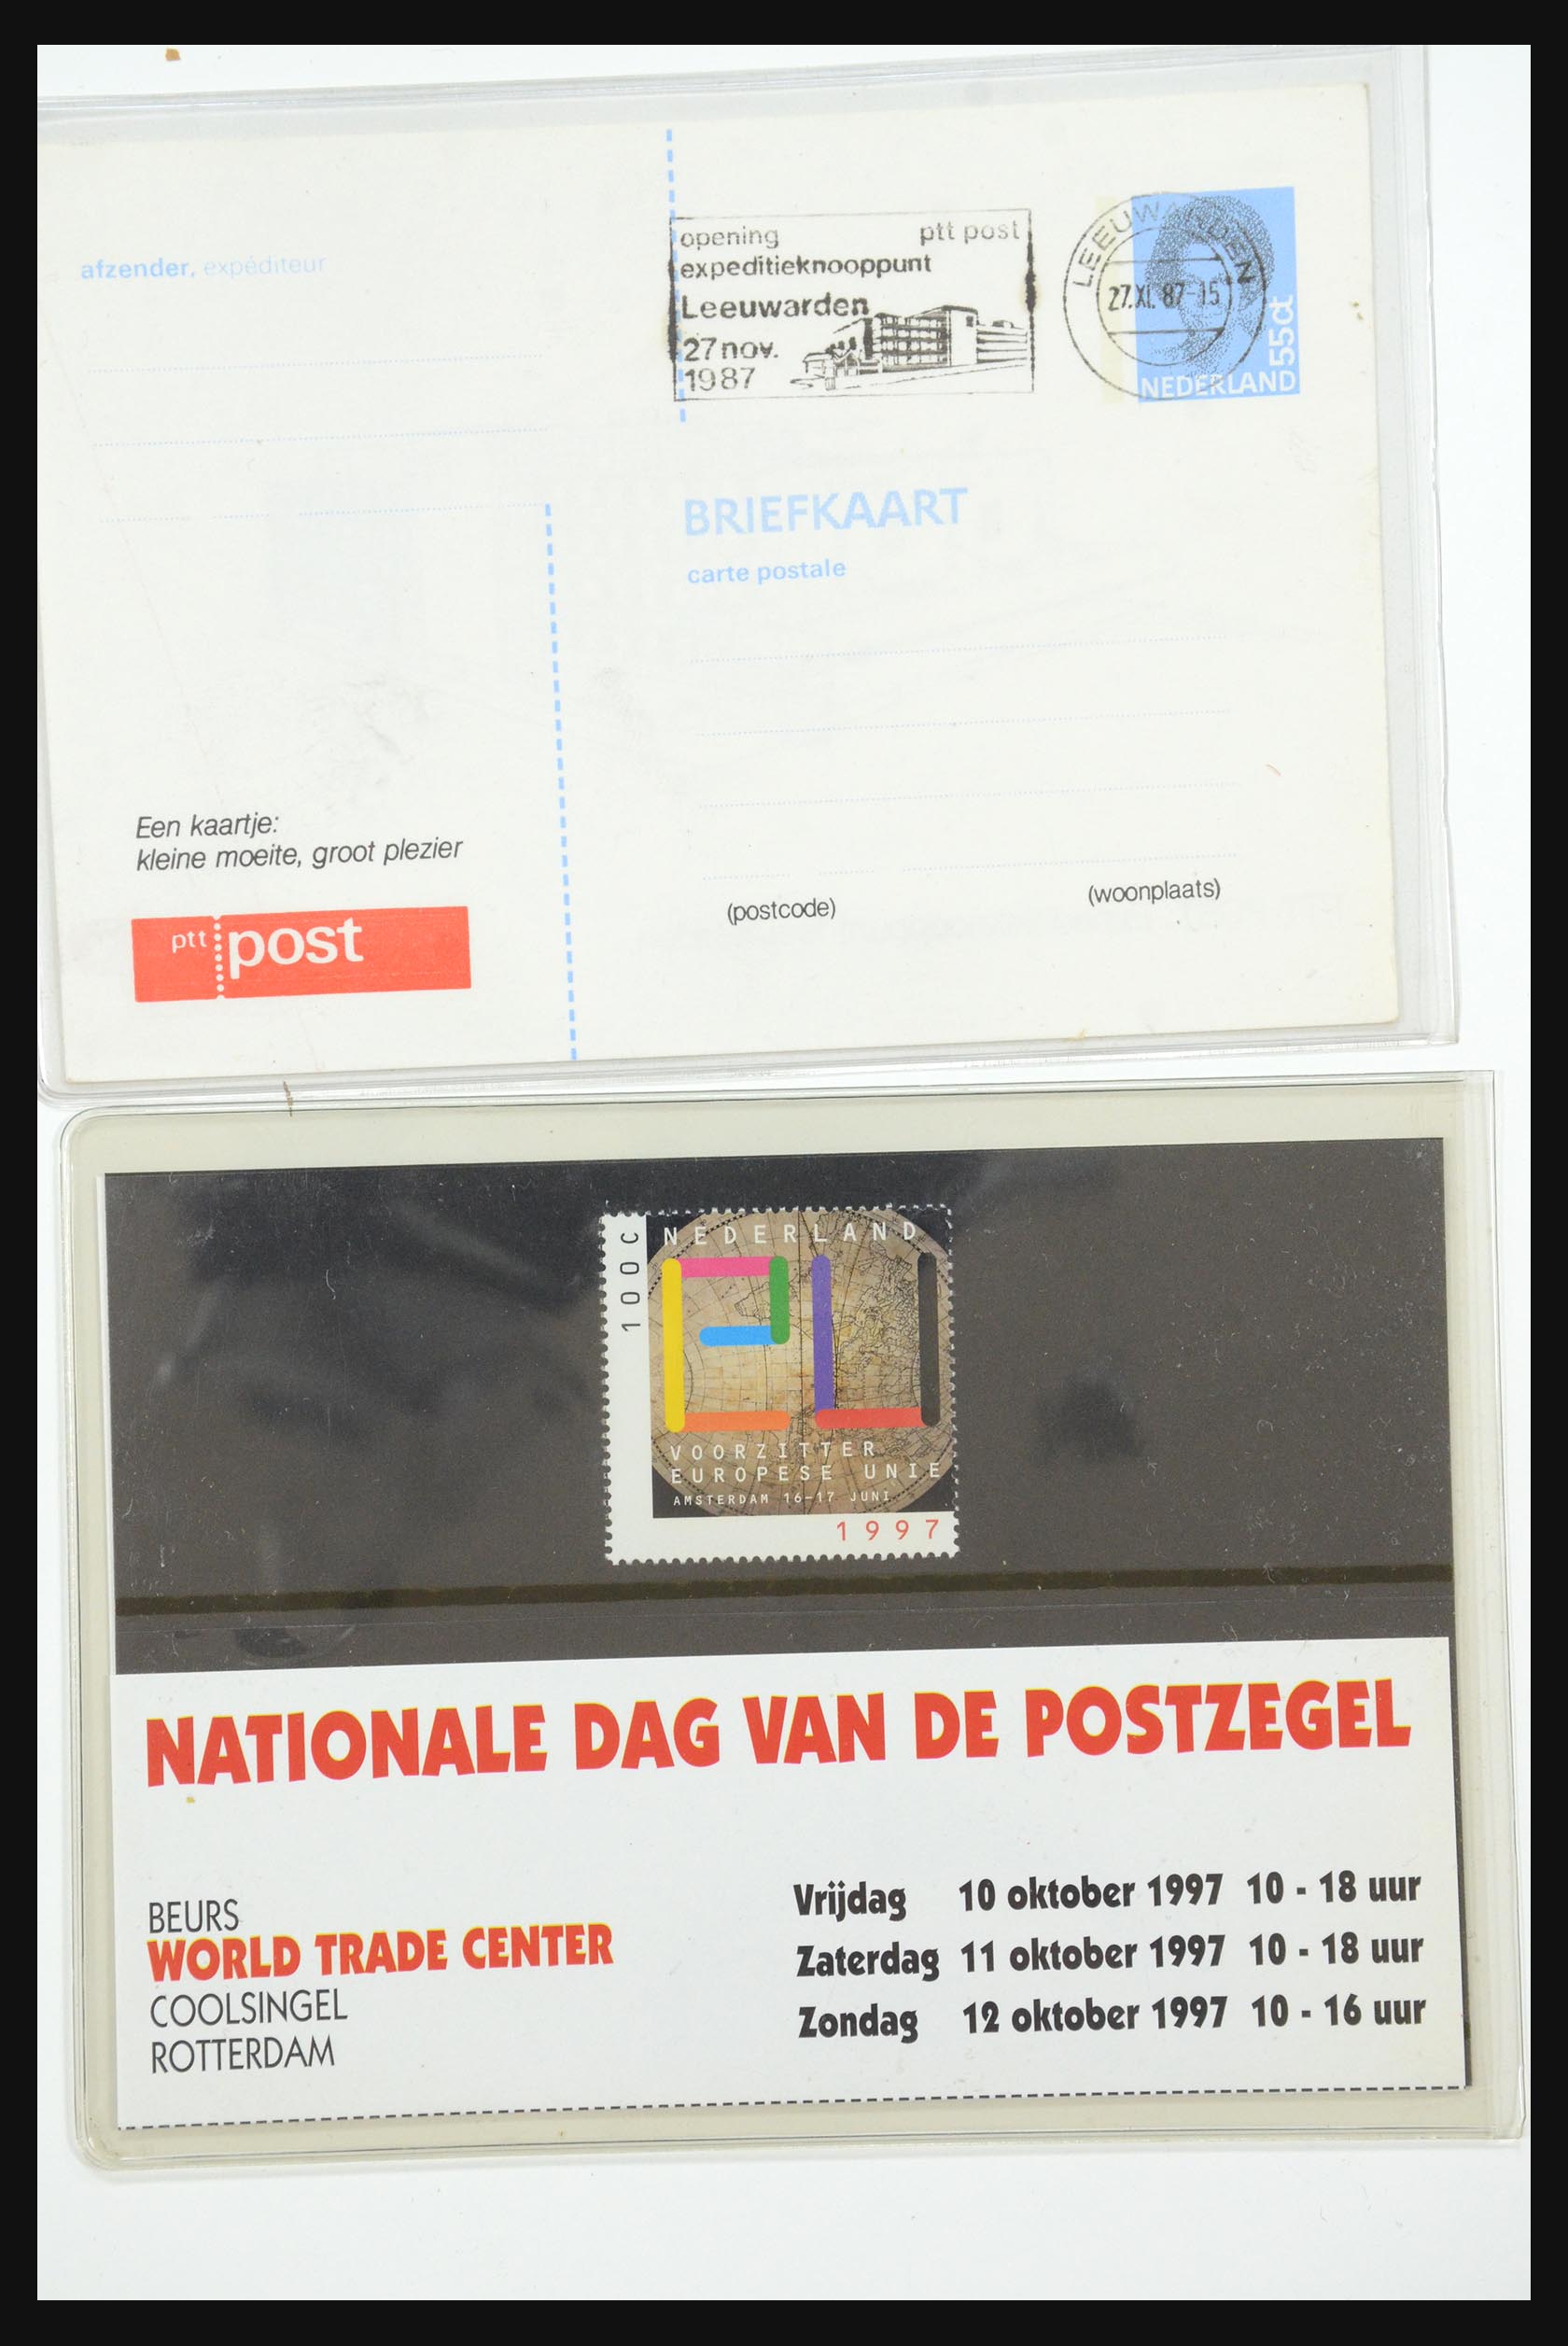 31495 064 - 31495 Netherlands special presentation packs.